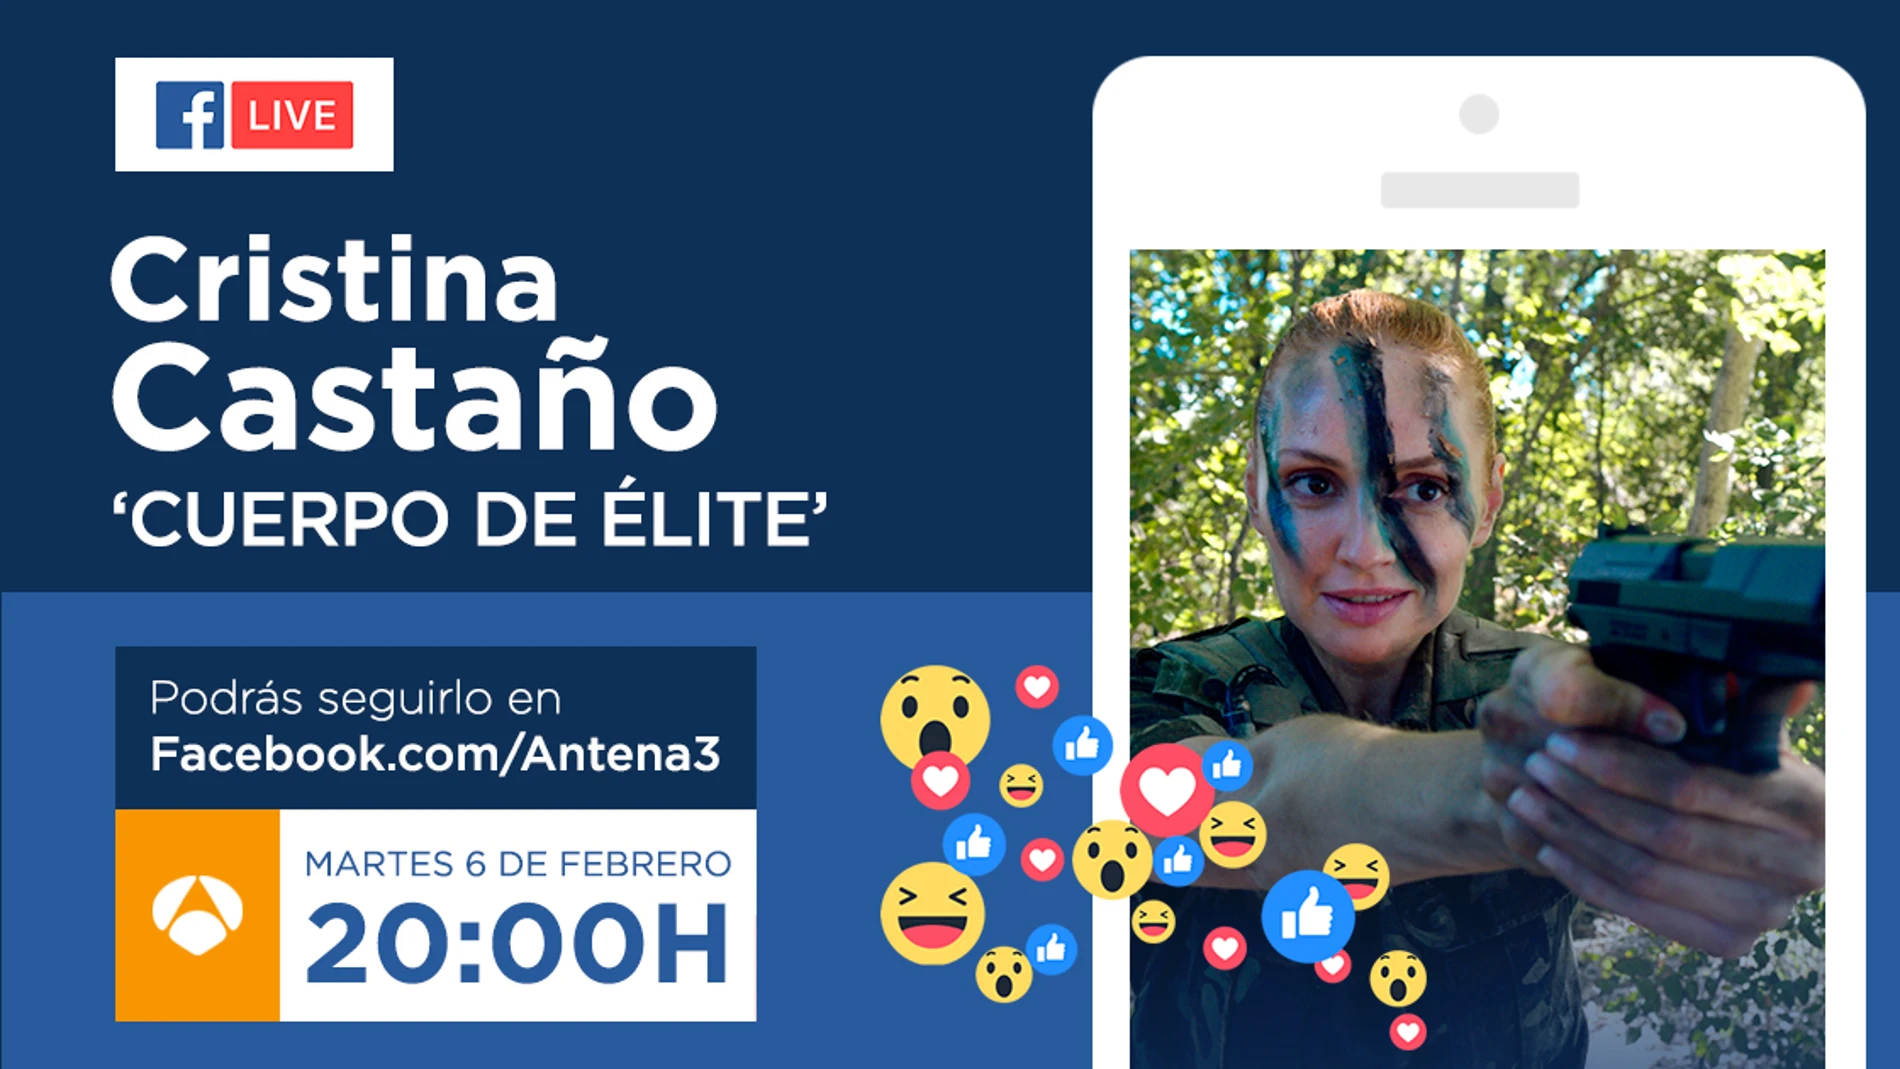 Cristina Castaño estará el martes en directo con los seguidores de 'Cuerpo de Élite' en Facebook Live